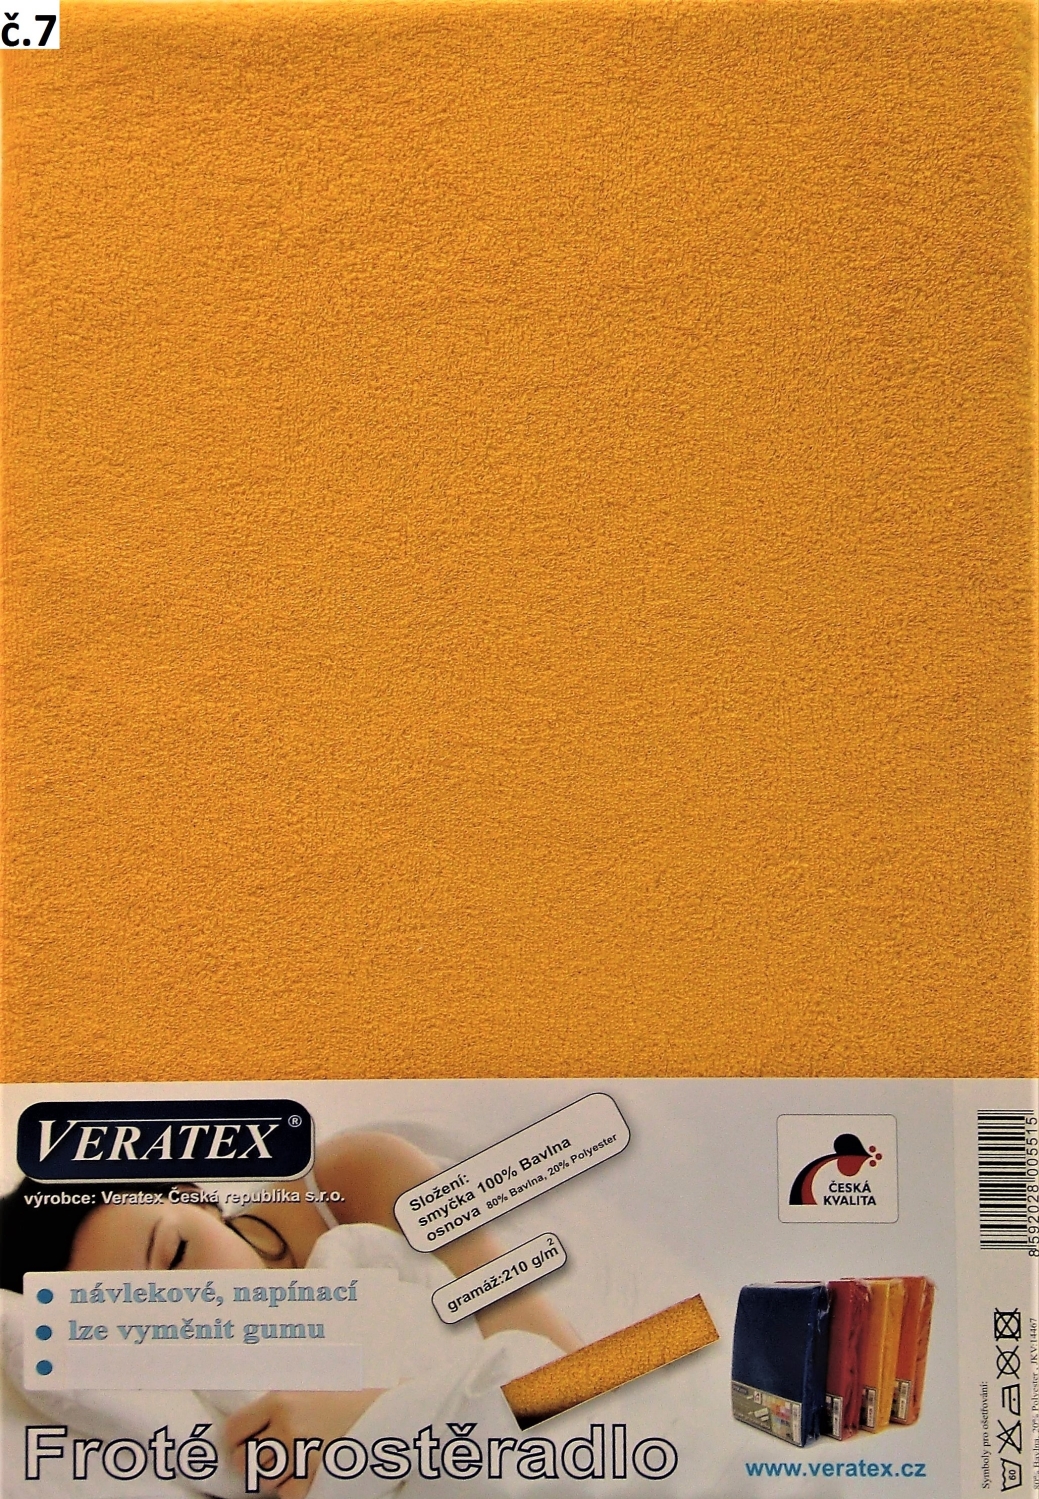 Veratex Froté prostěradlo jednolůžko 90x200/16 cm (č. 7-sytě žlutá)